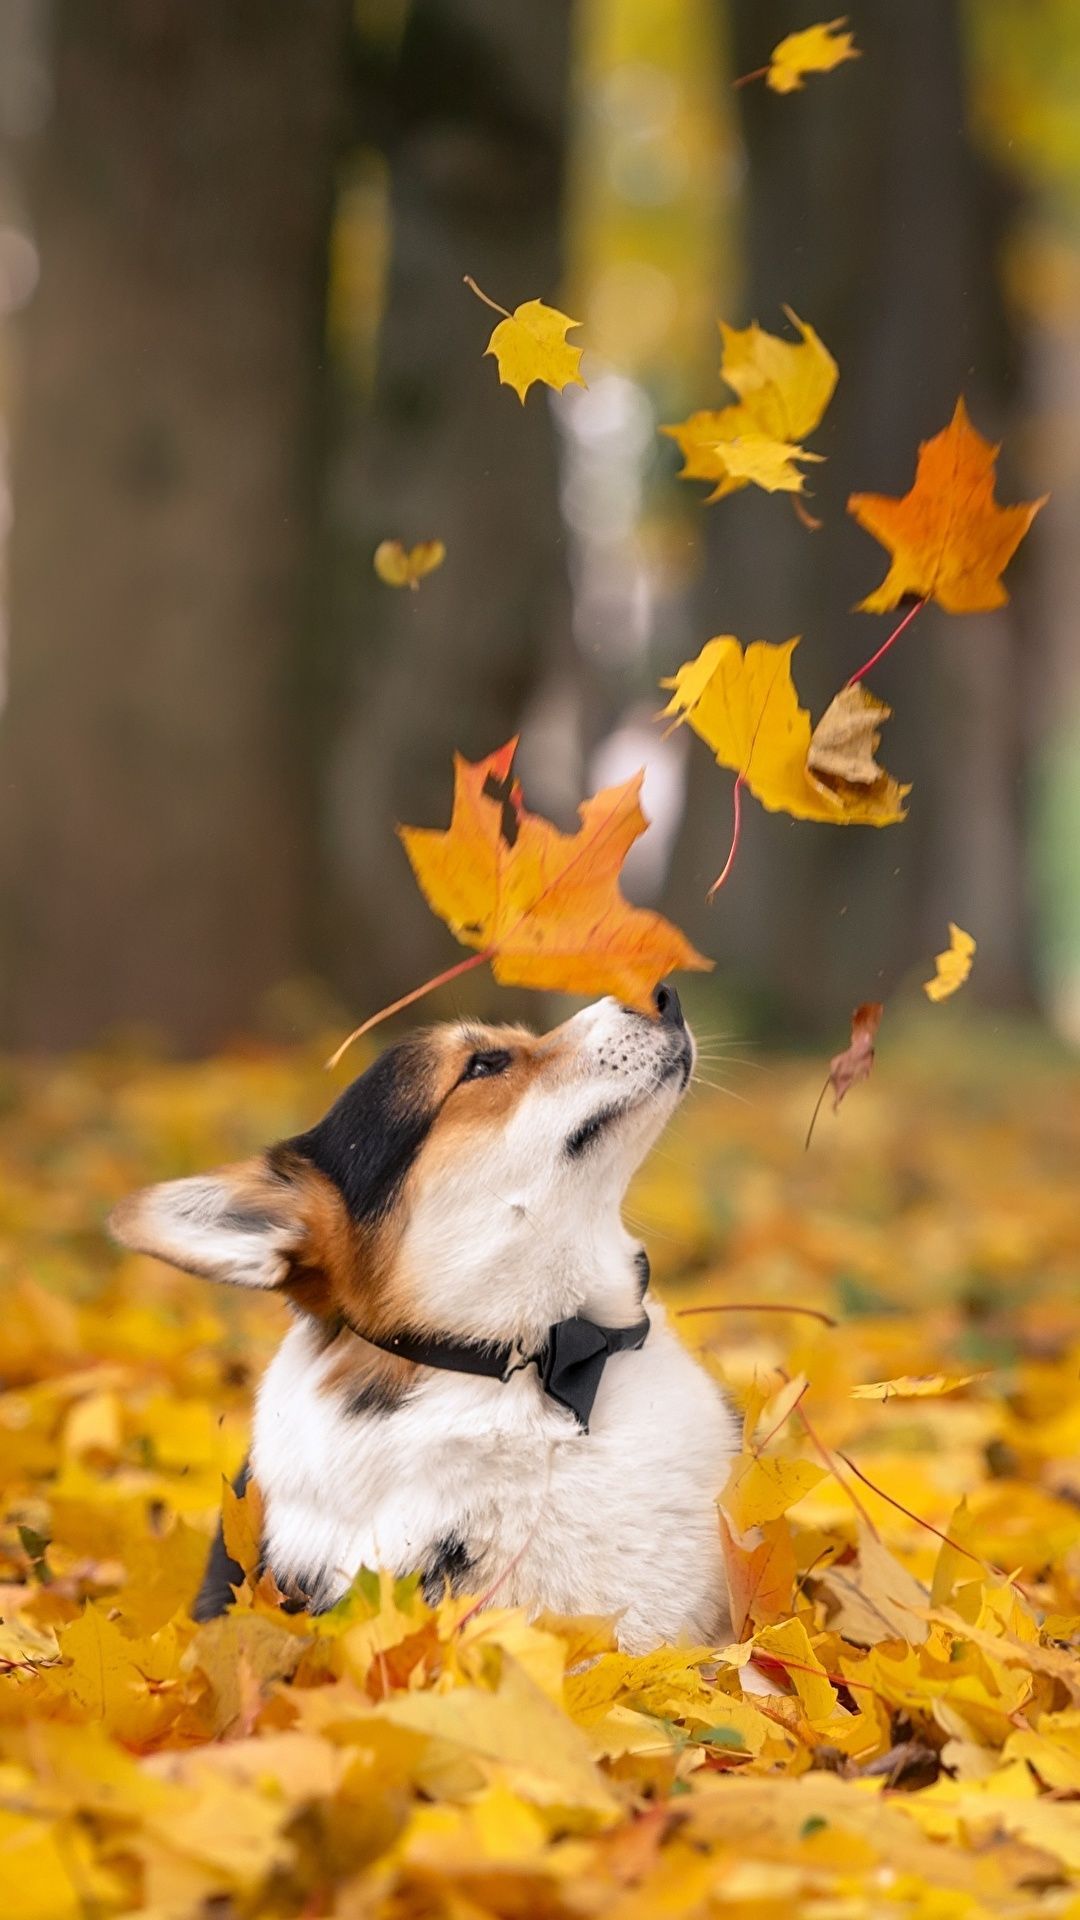 Chó mùa thu: Mùa thu là thời khắc tuyệt vời để tận hưởng những khoảnh khắc bình yên và chân thành cùng bầy chó cưng của bạn. Hình ảnh mê hoặc này sẽ khiến bạn chìm đắm vào vẻ đẹp mà mùa thu mang đến.